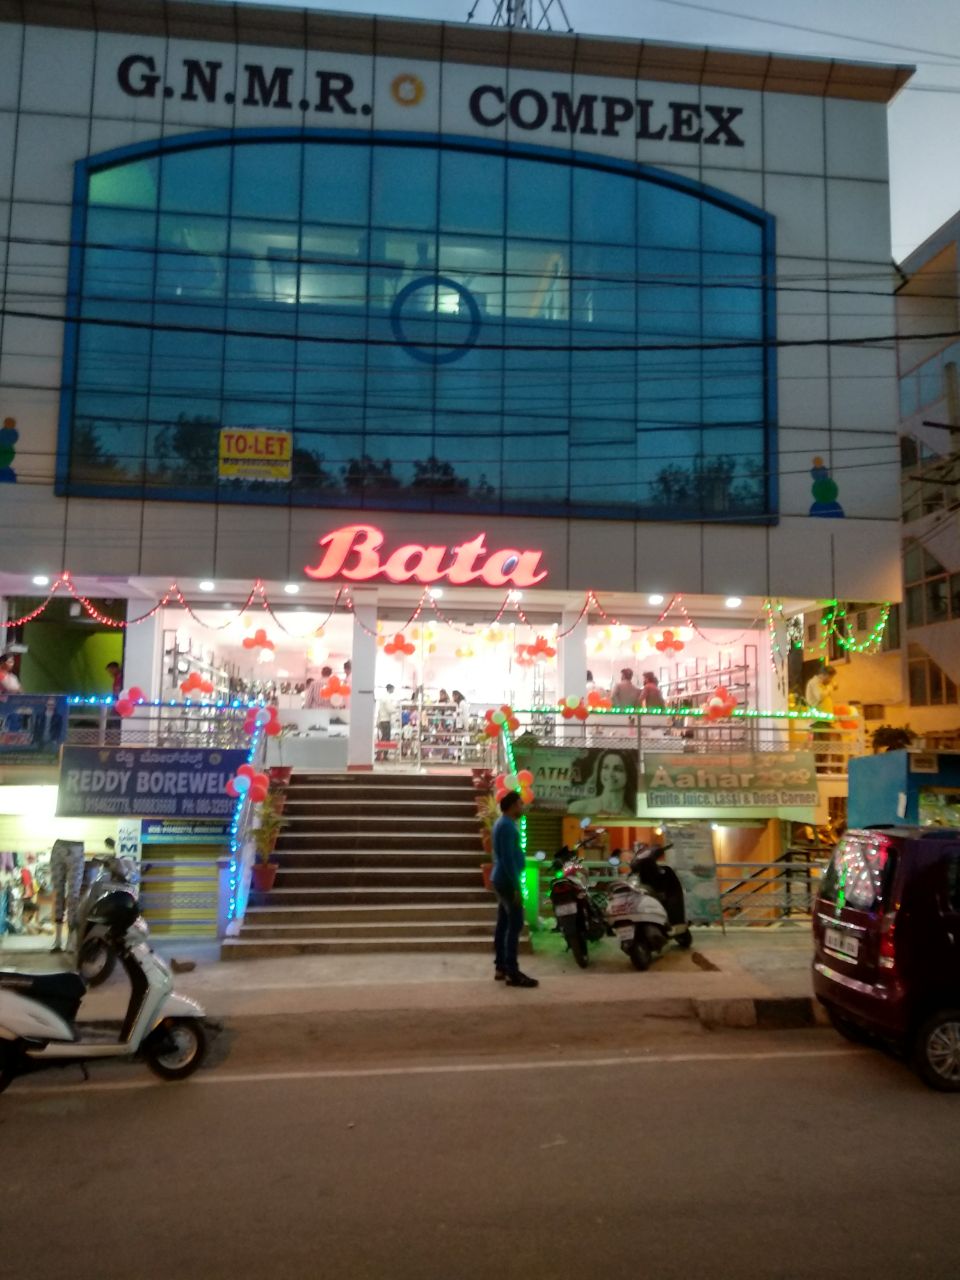 Bata Showroom